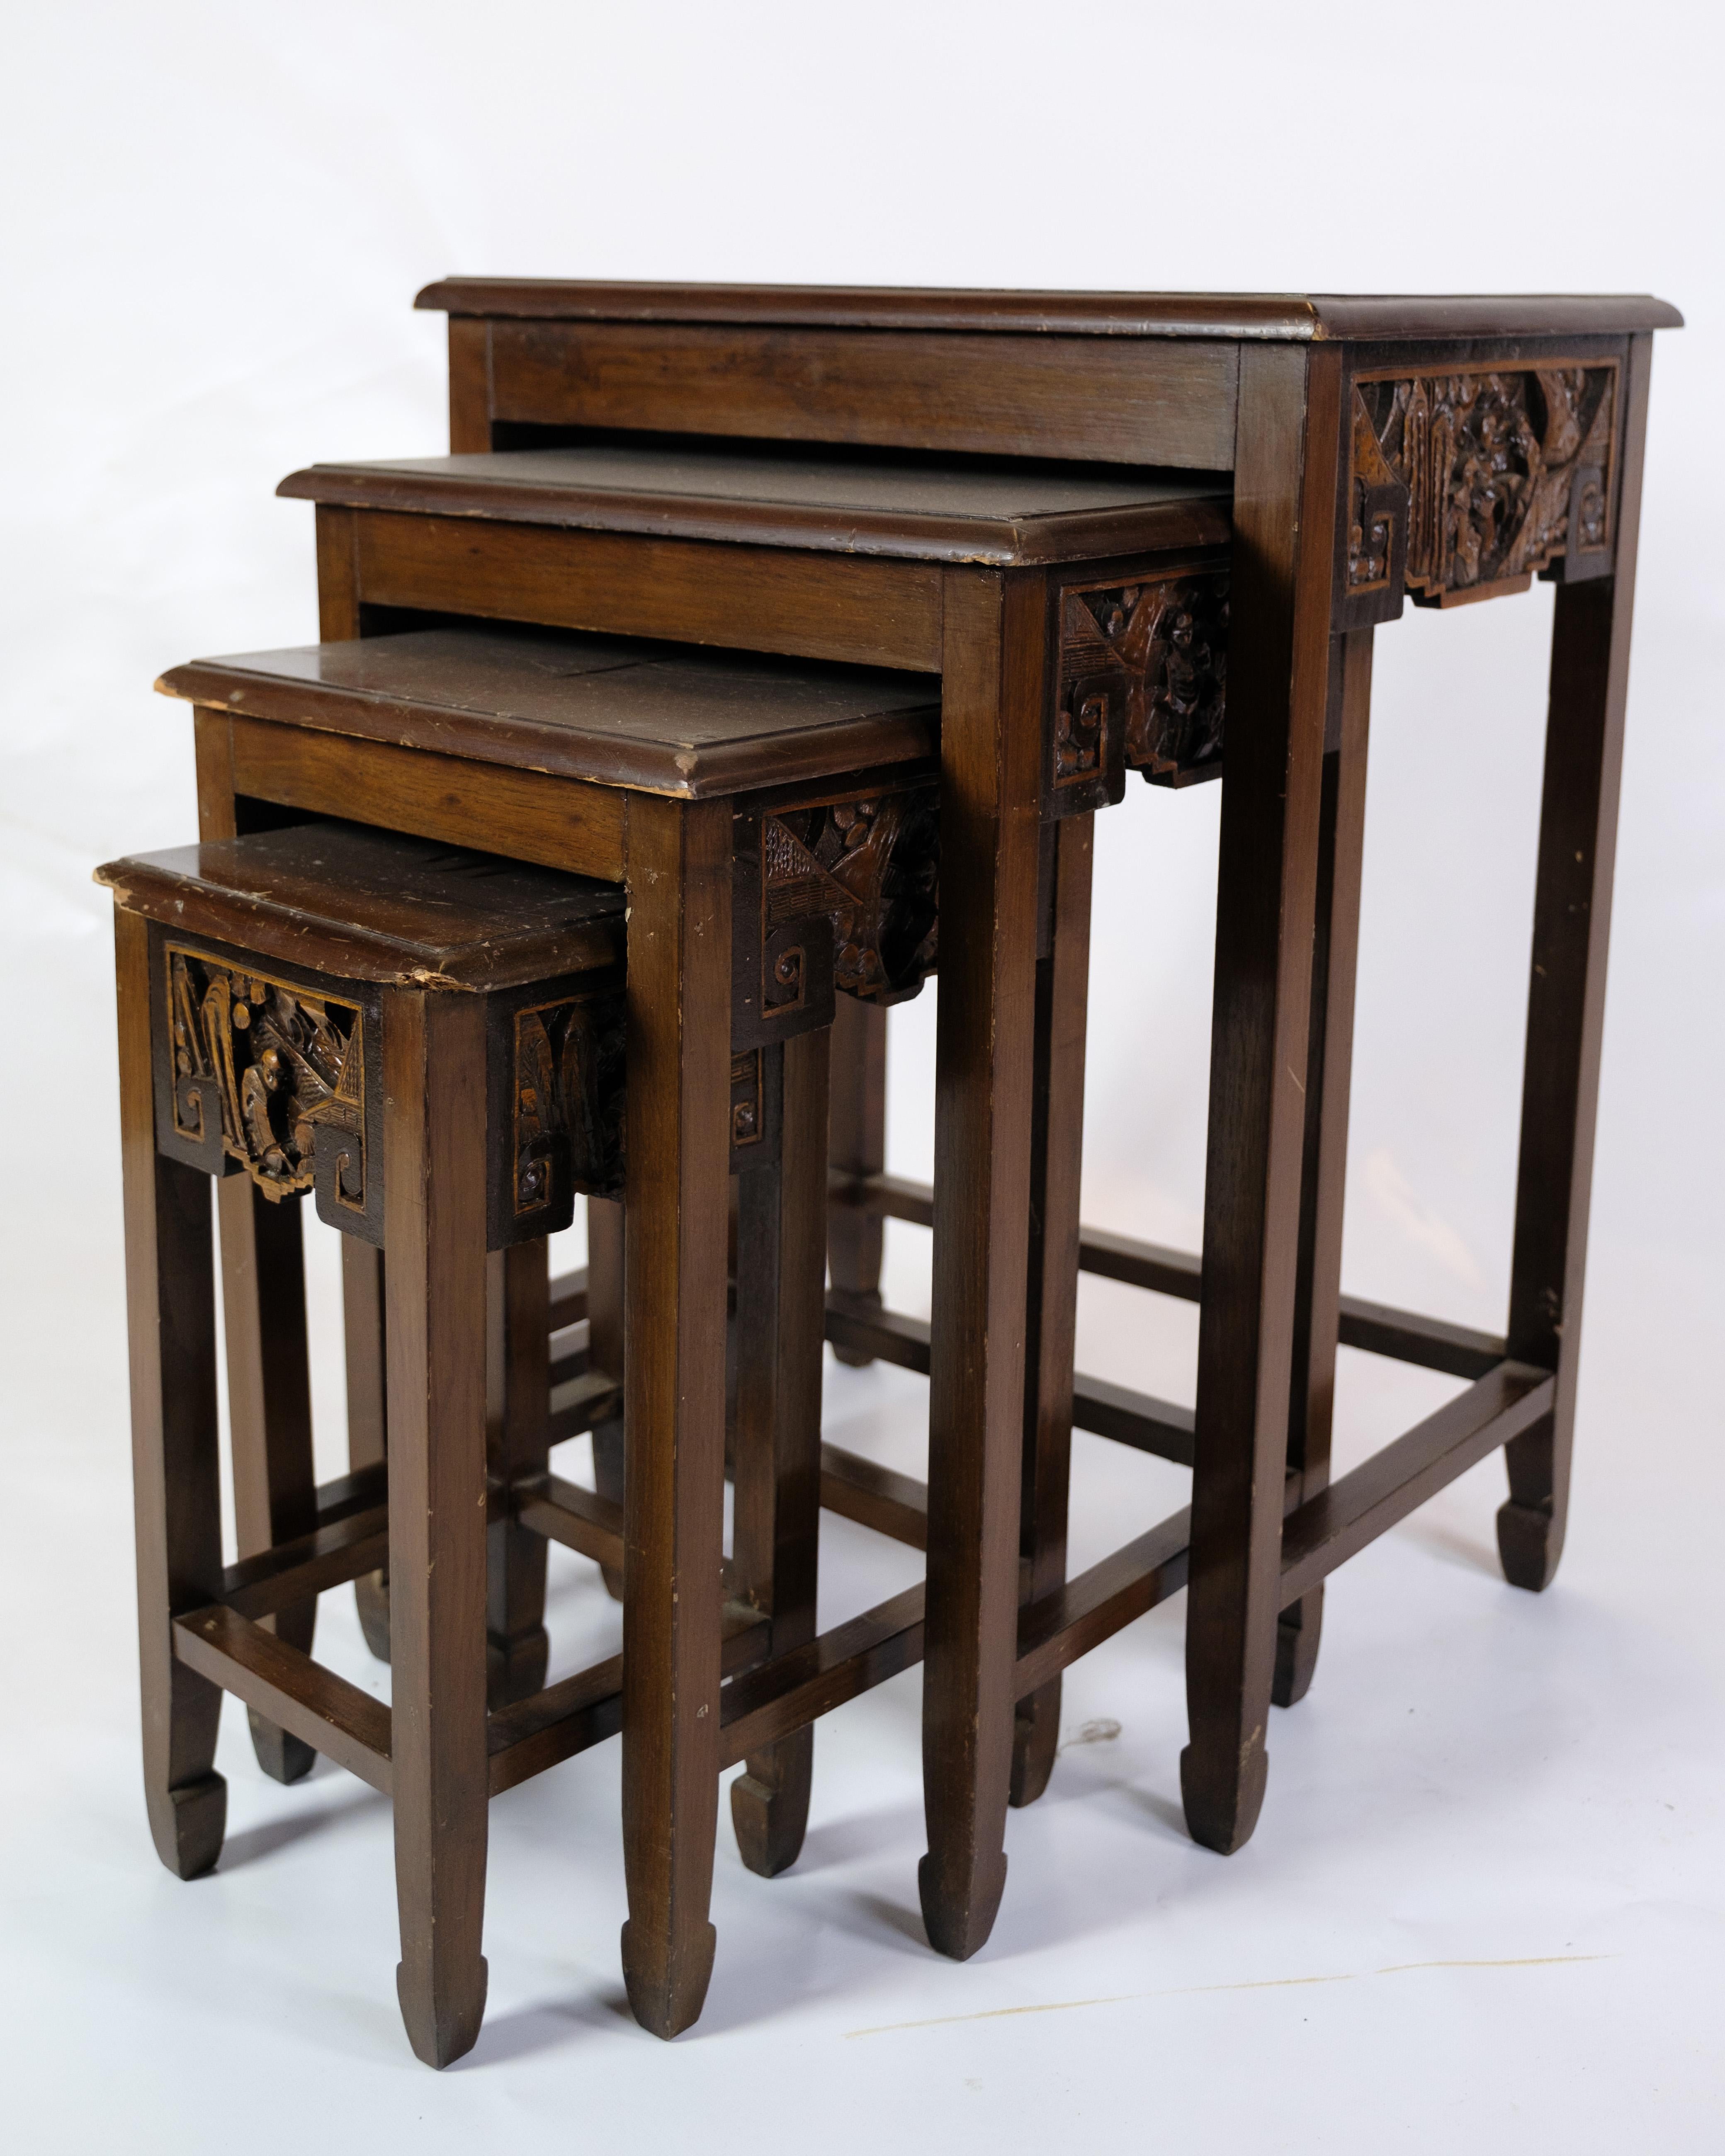 Diese vier antiken Beistelltische sind eine faszinierende Sammlung von Möbeln im chinesischen Stil der 1930er Jahre. Aus Mahagoniholz gefertigt, strahlt jeder Tisch eine einzigartige Schönheit und Eleganz aus, die jeden Raum mit einem Hauch von